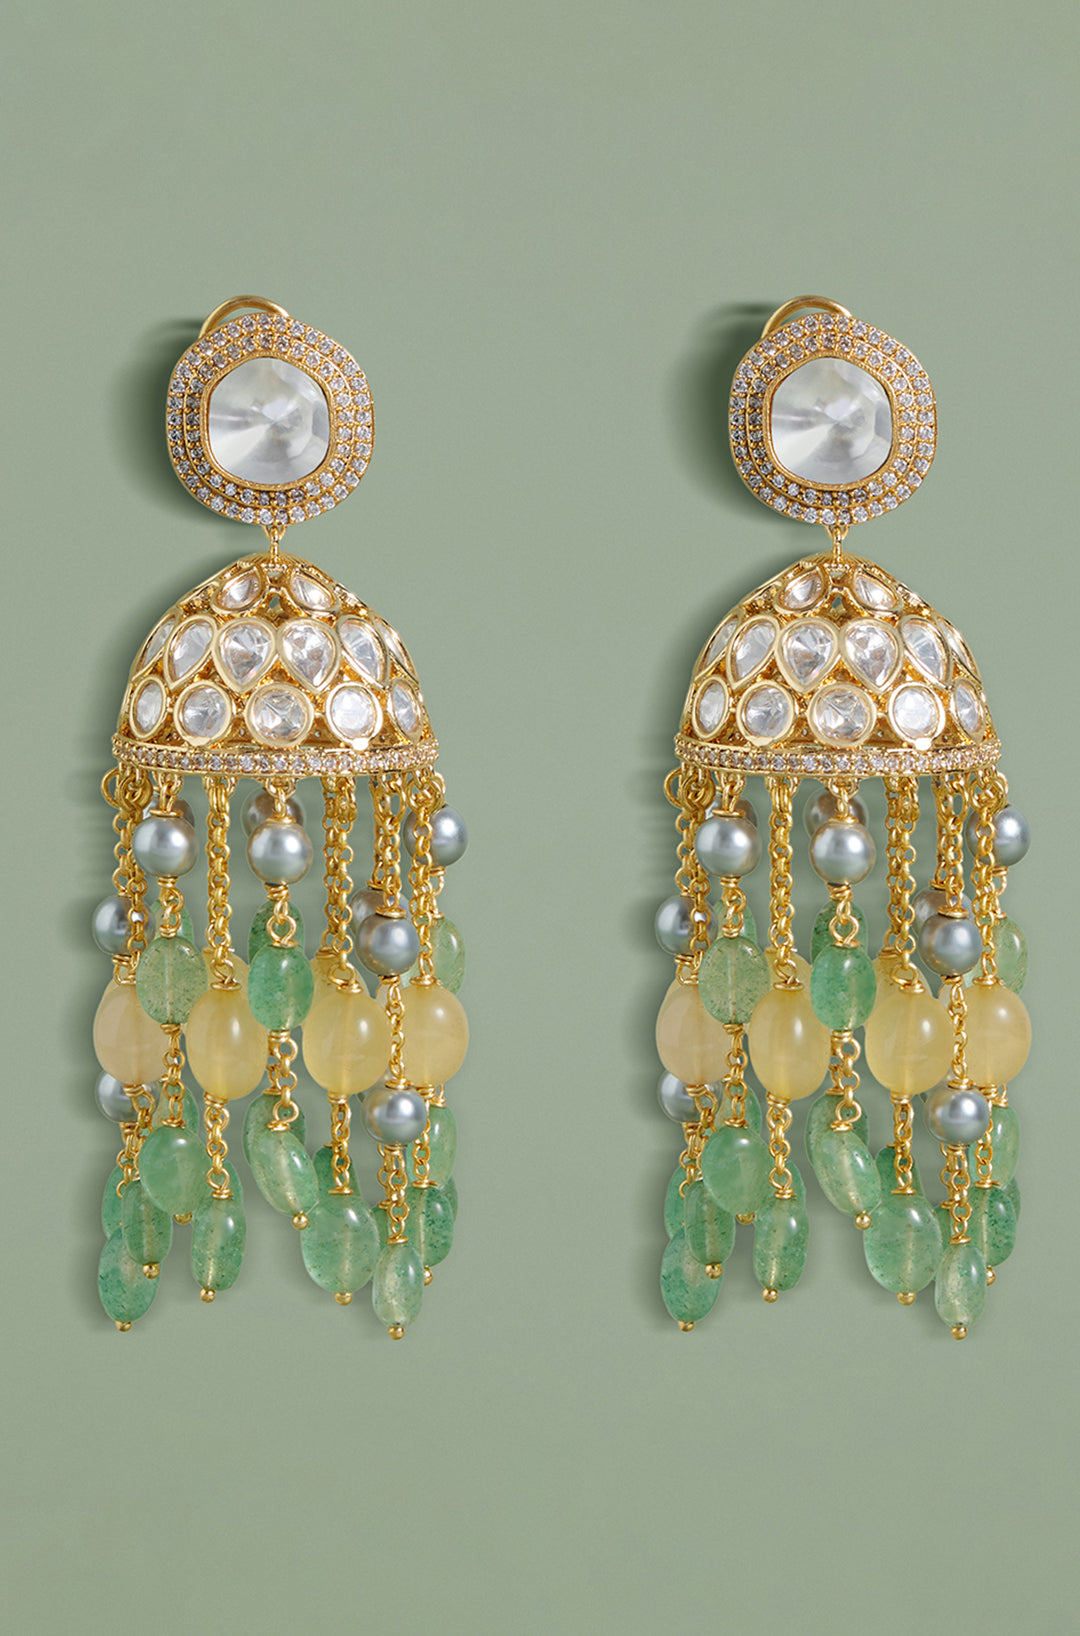 22k Yellow Gold Earrings Jhumka Jewelry , Handmade Vintage Pure Traditional  Wedding Indian Style WEDDING Dangle Jhumki Earrings Chandelier - Etsy Israel